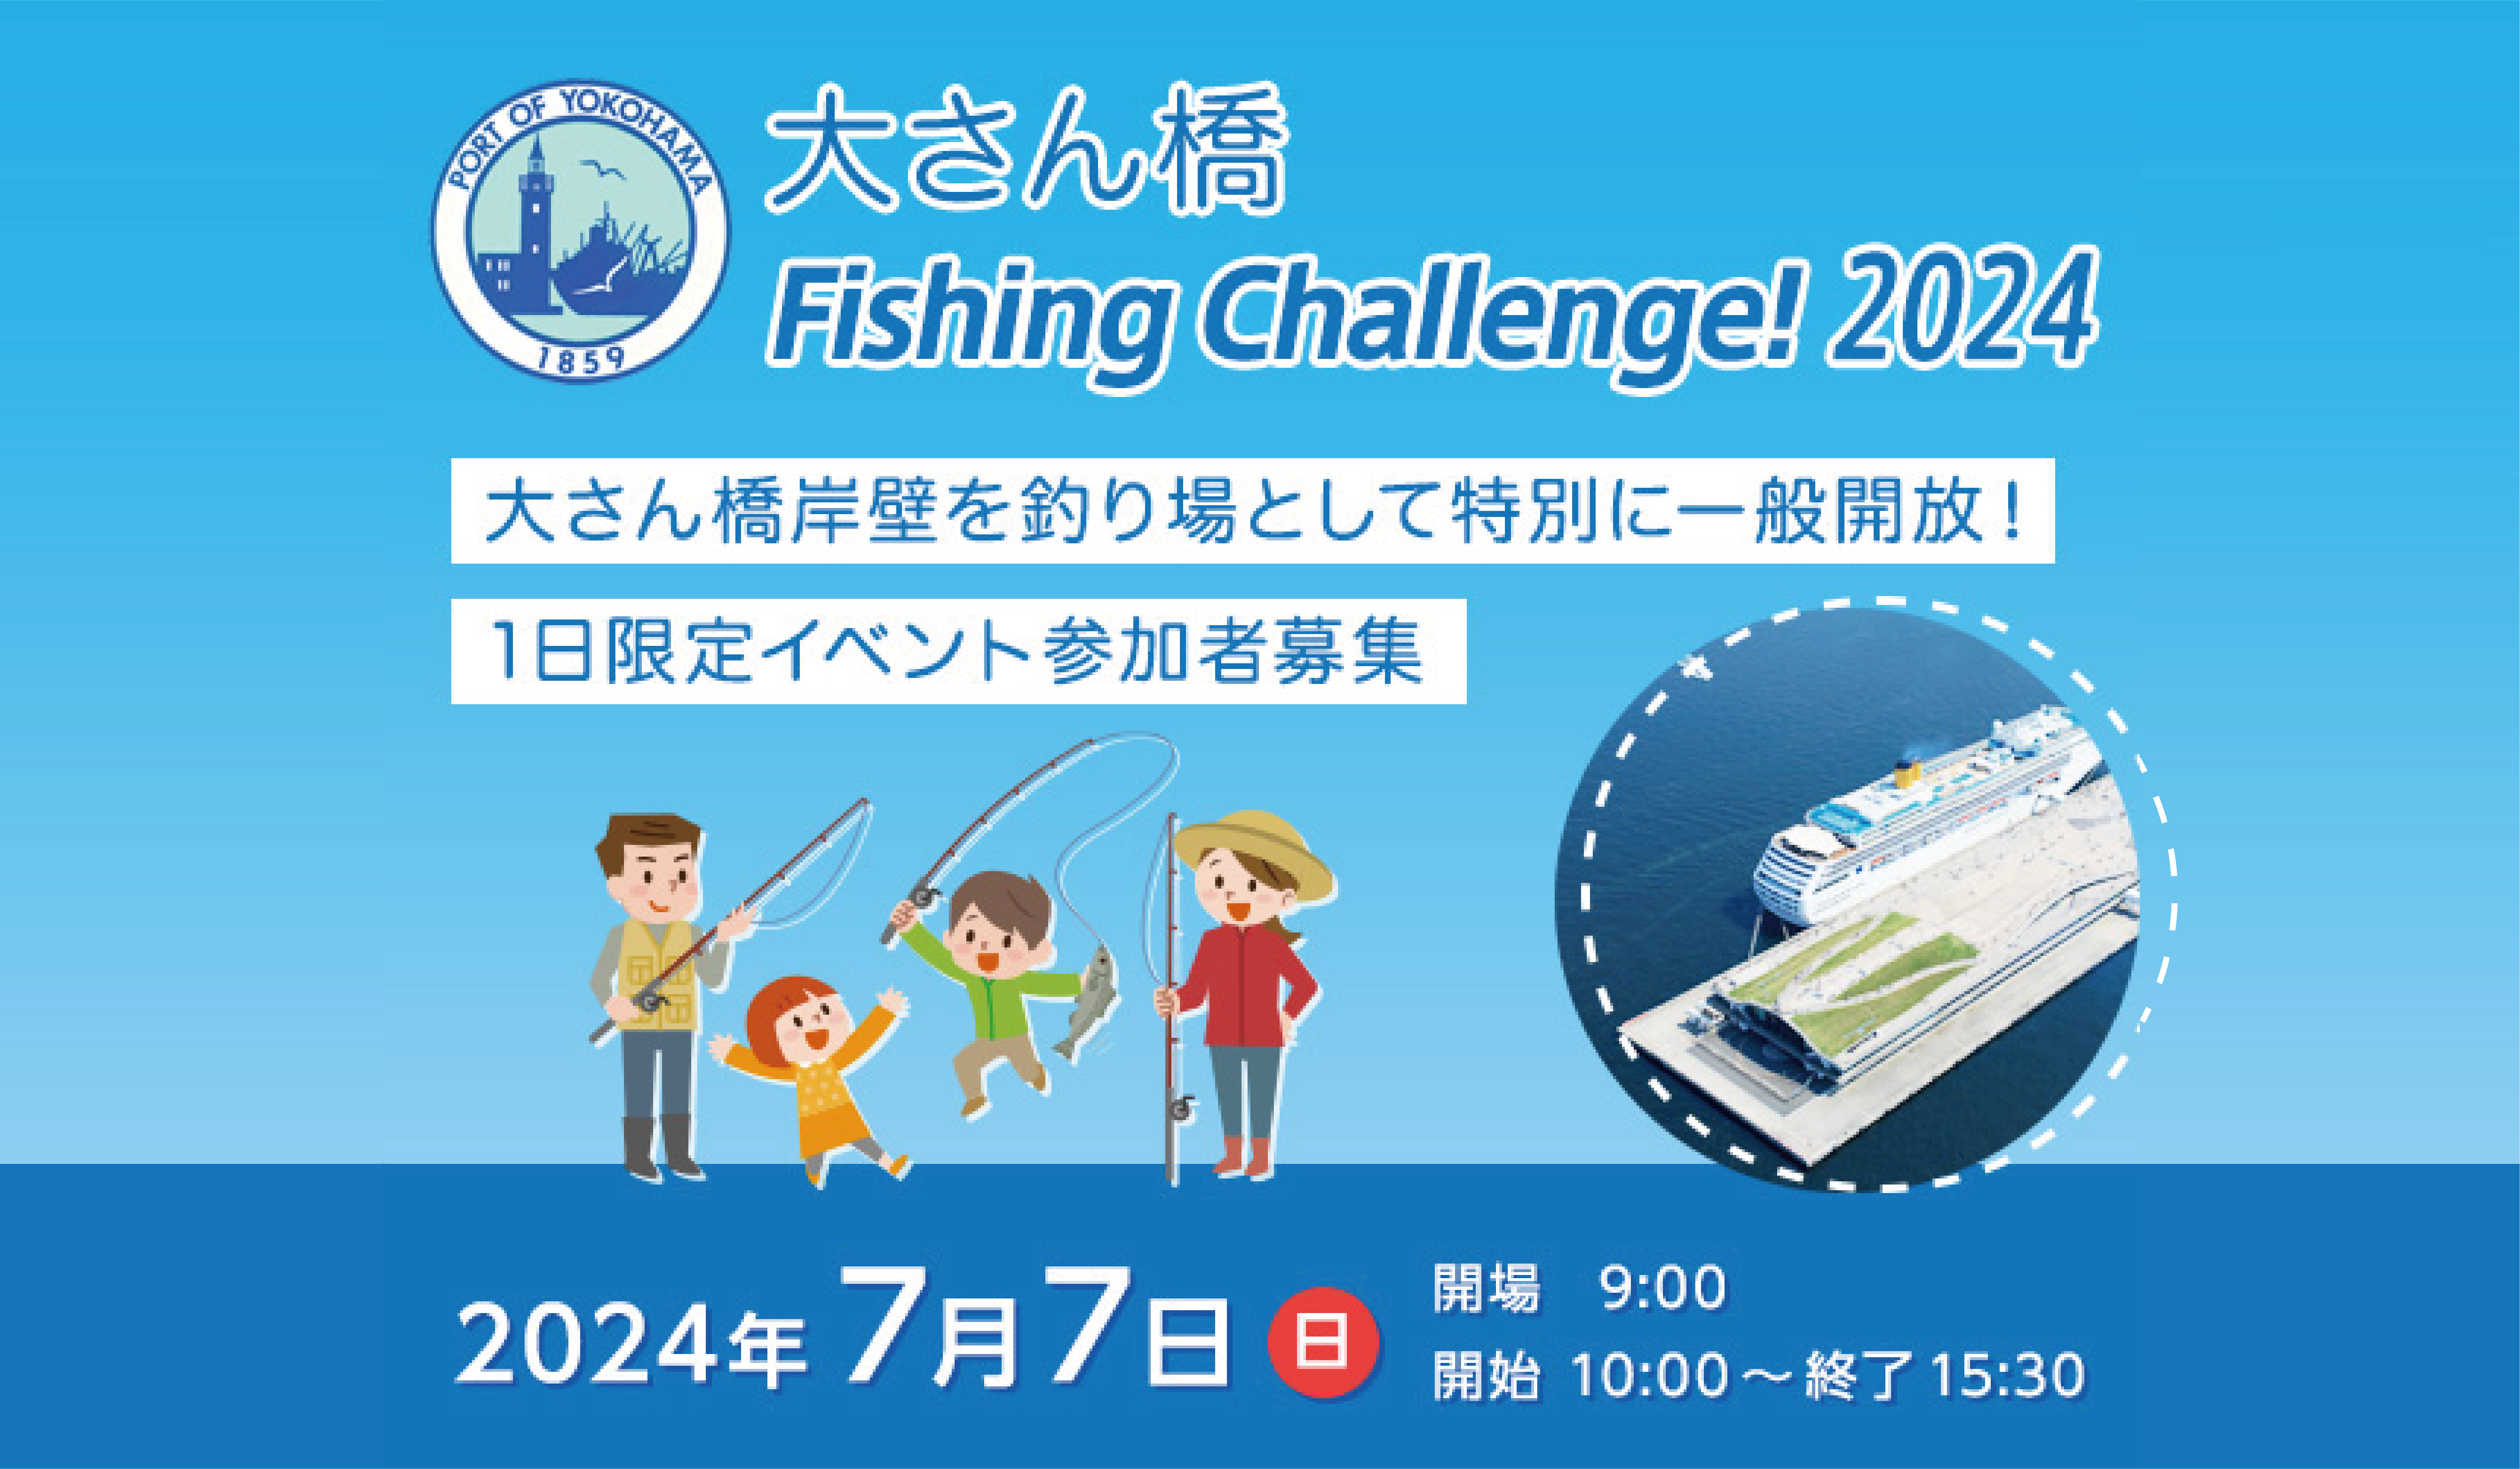 7/7(日) 大さん橋Fishing Challenge！2024